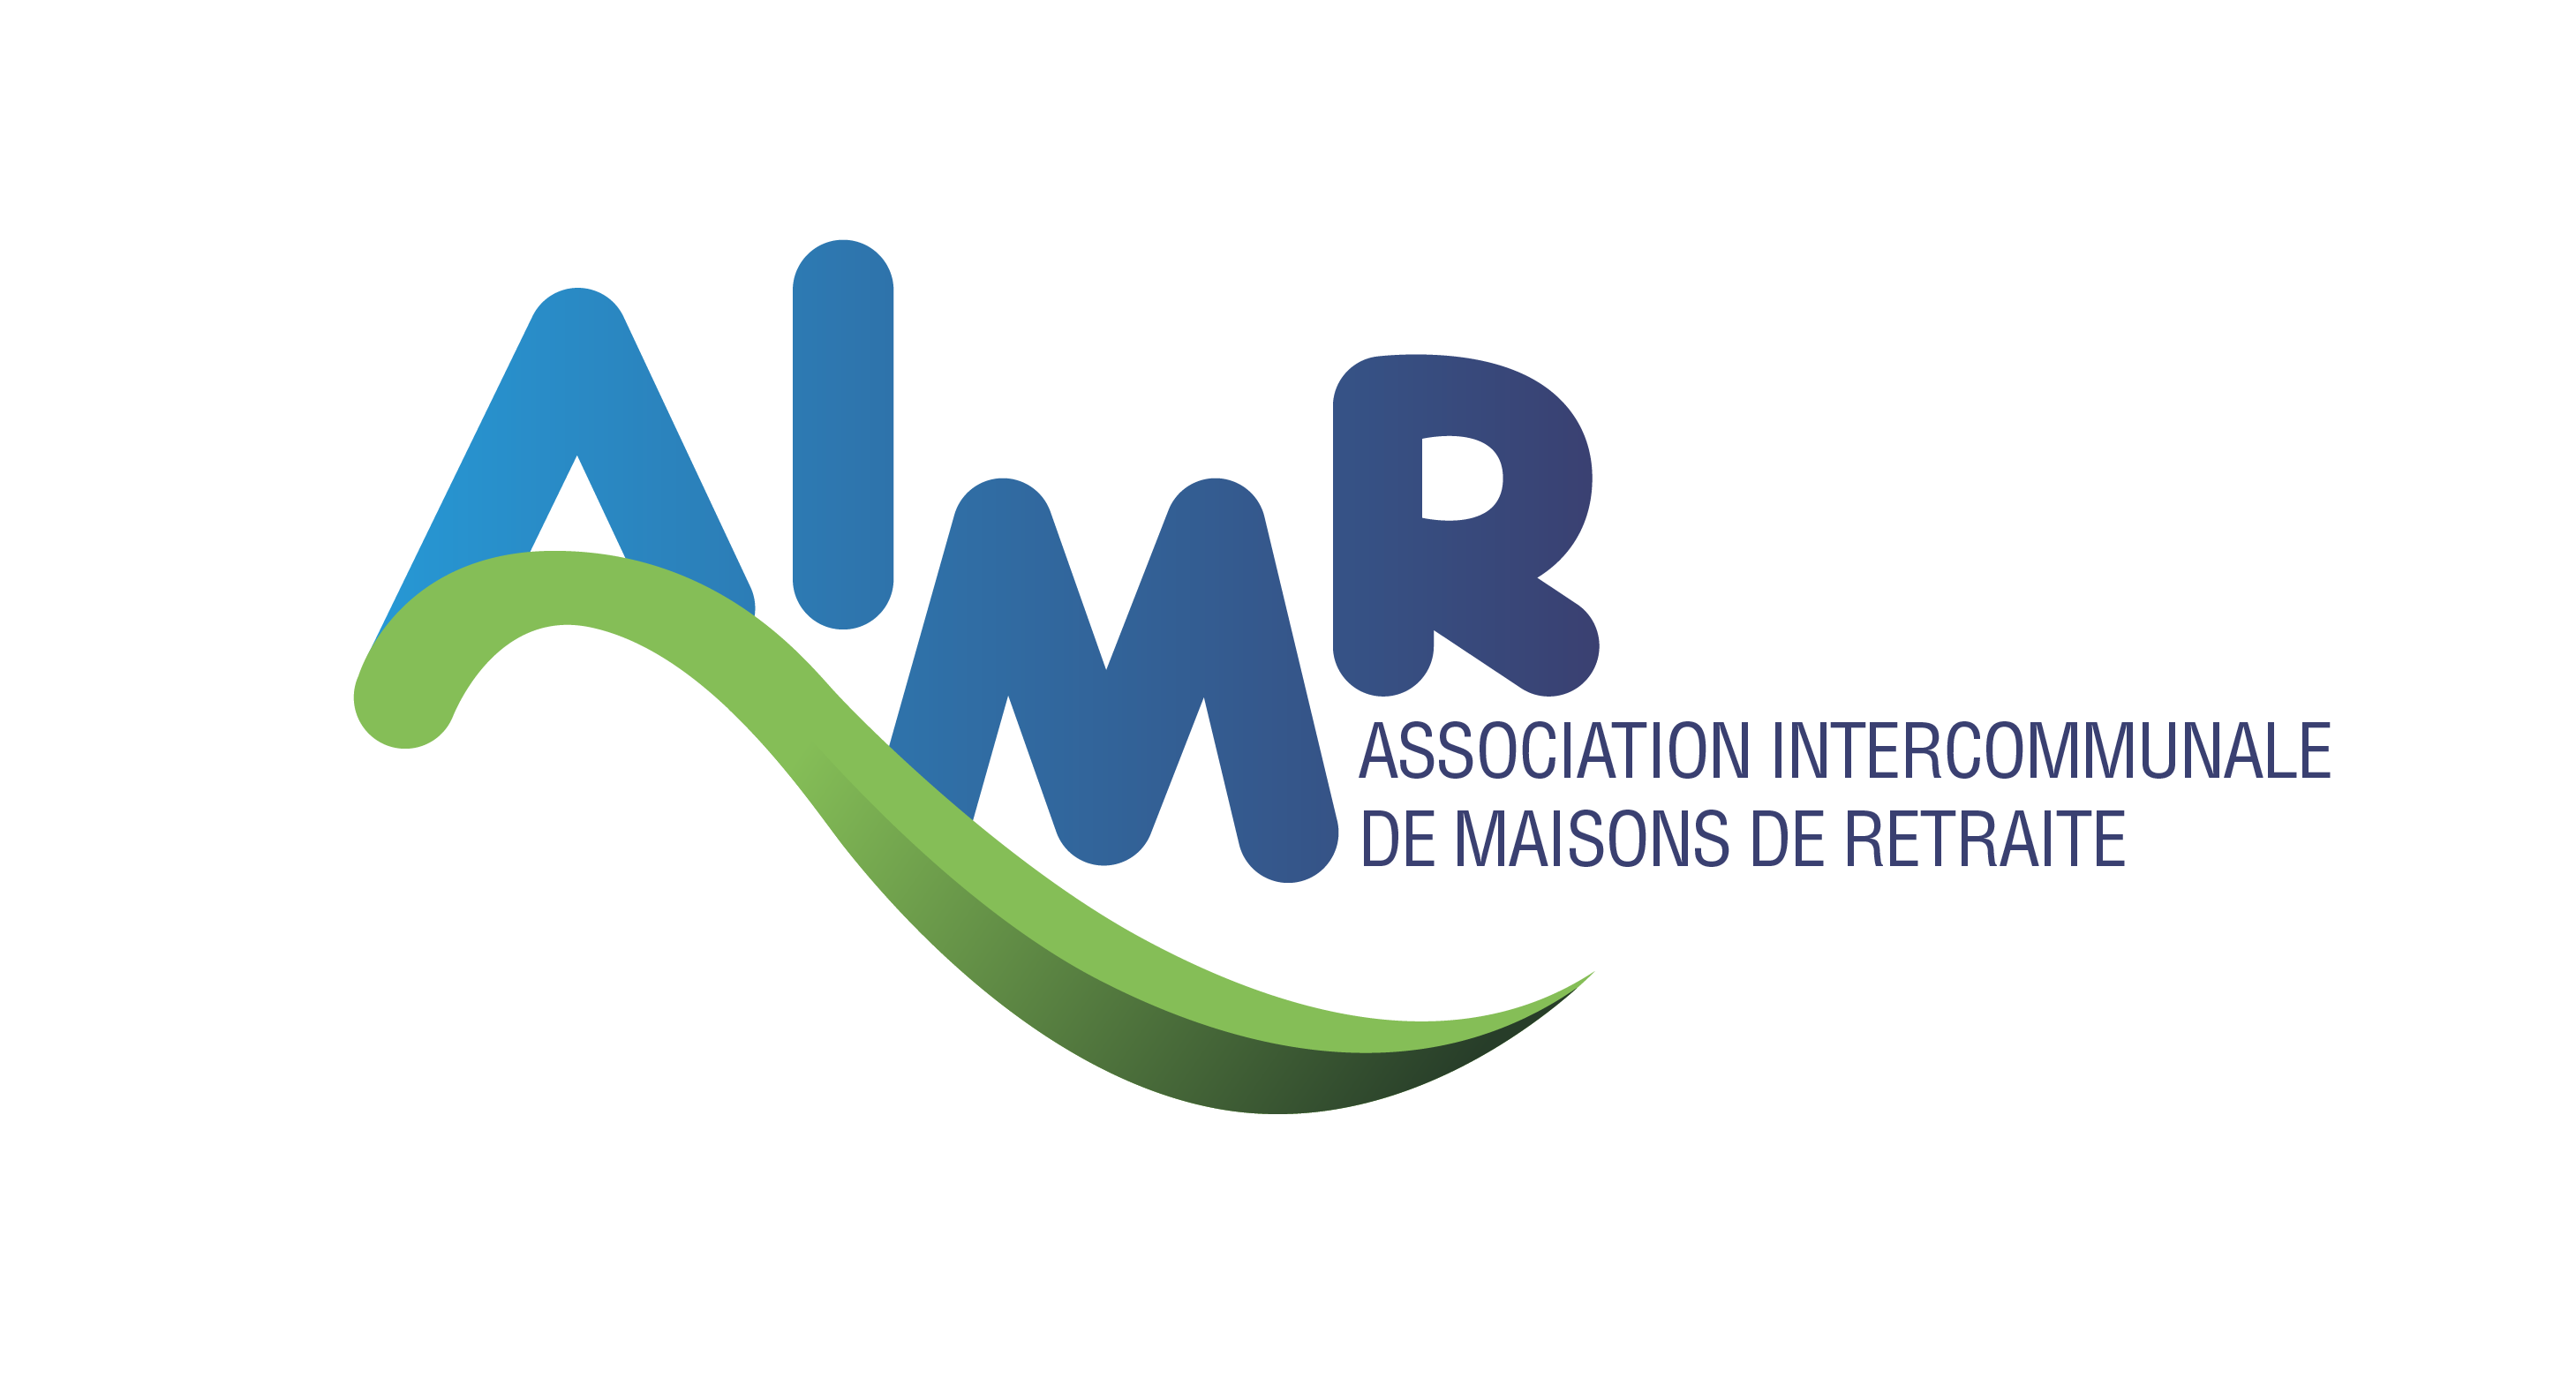 AIMR Logo - Association Intercommunale de Maisons de Retraite